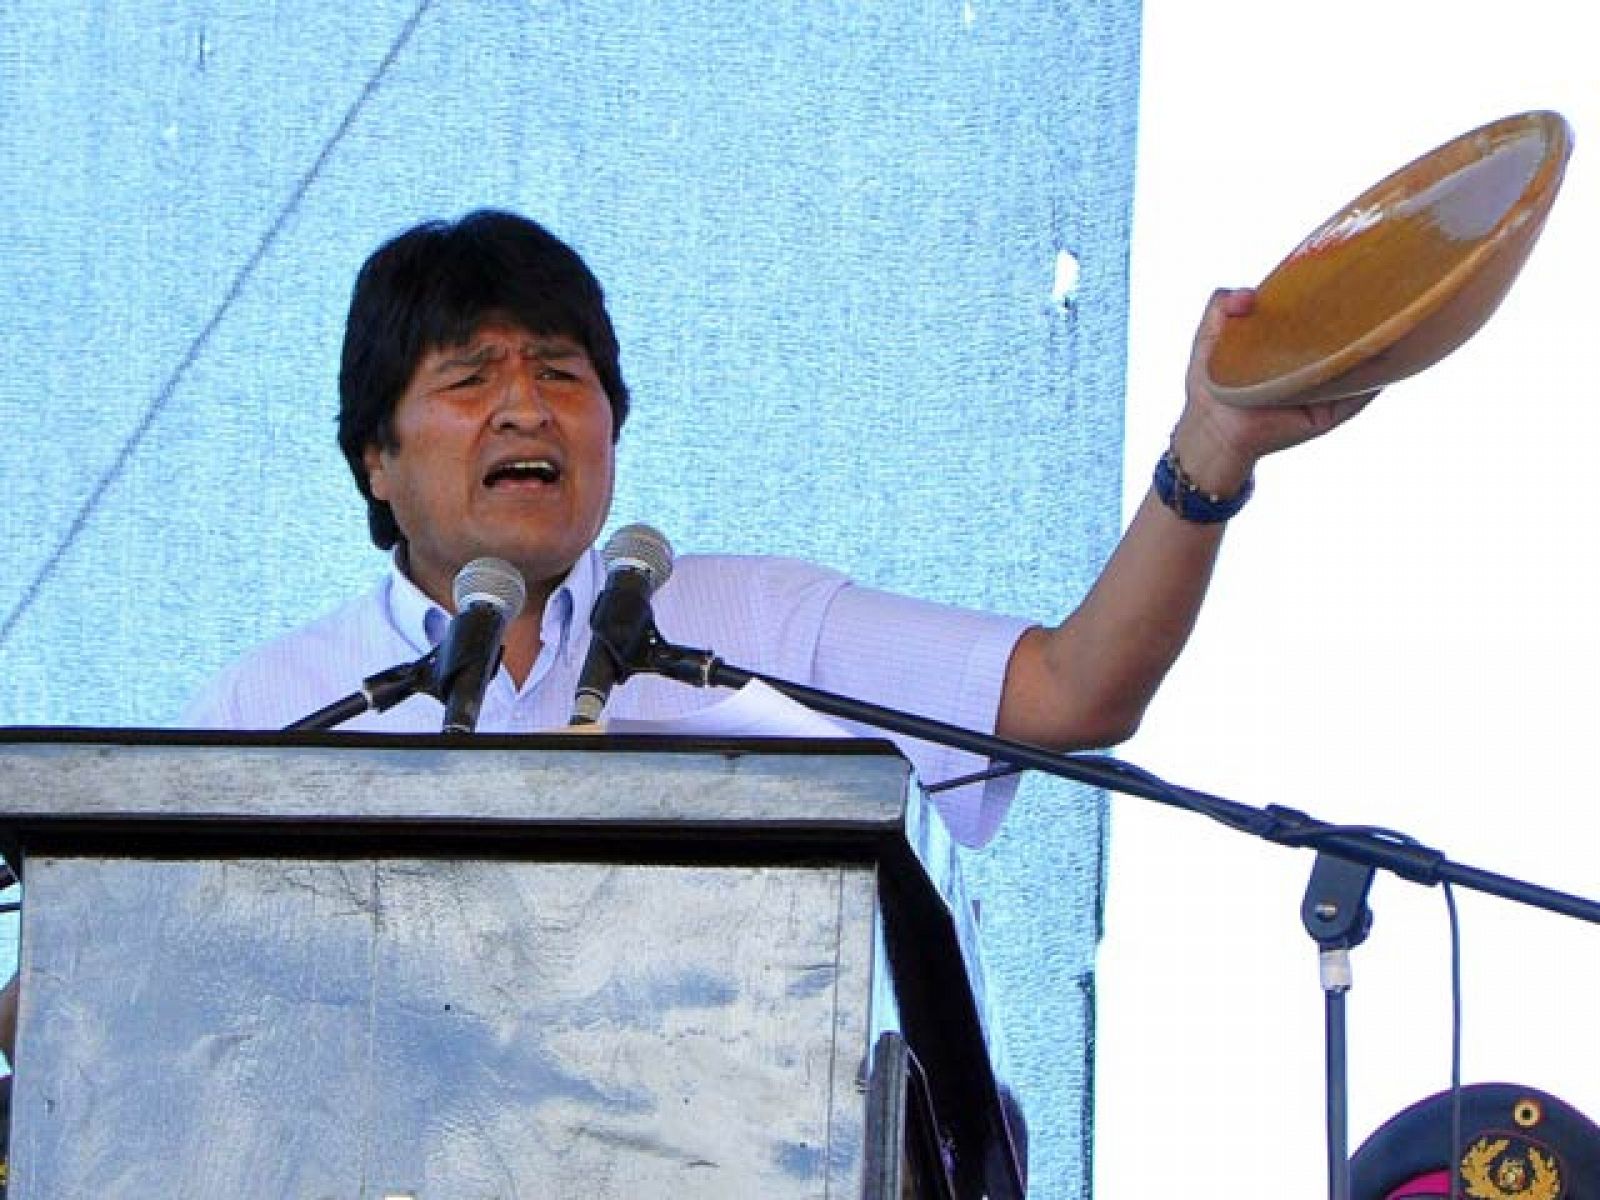 El presidente del país, Evo Morales, ha asociado el consumo de pollos de granja con la homosexualidad, y también ha acusado a los transgénicos de ser los causantes de la calvicie.